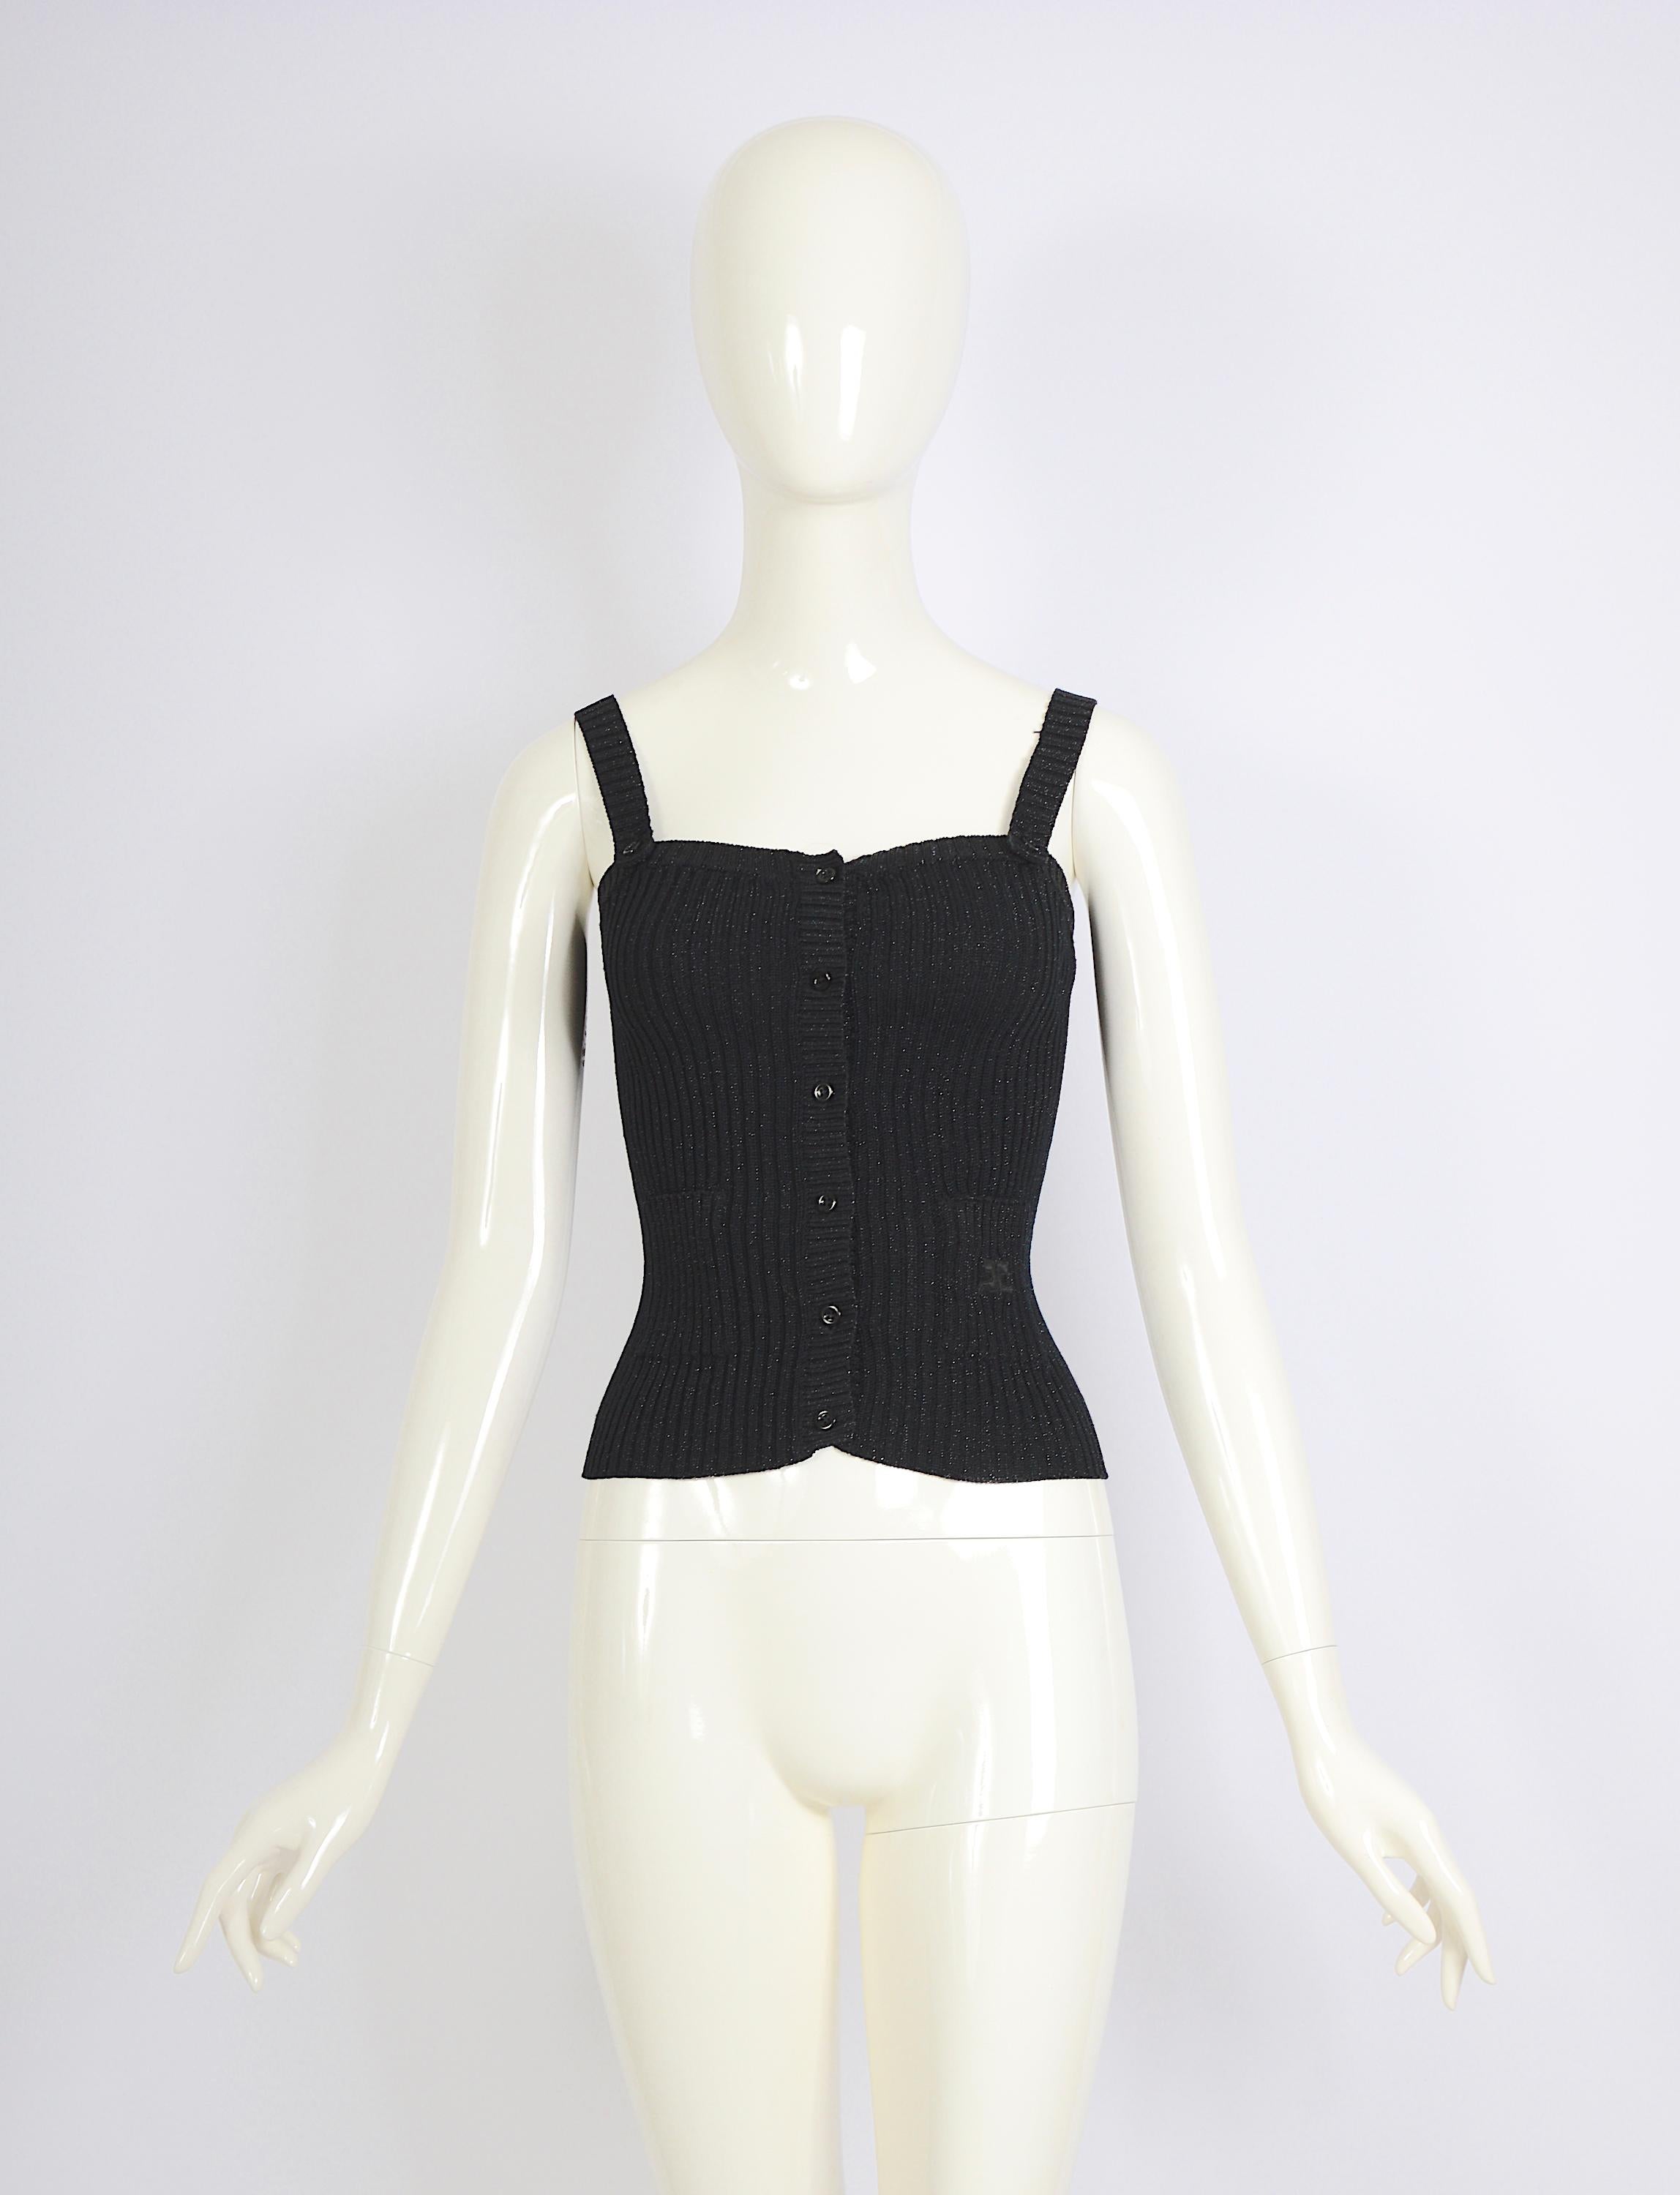 Vintage Courrèges Paris 1960s black cotton and lurex stretch top with front button closure and shoulder straps top.
Courrèges size B
Measurements flat: Bust 12,5inch32cm(x2) - Waist 12inch/30,5cm(x2) - Total Length 18,5inch/48cm
Excellent condition.